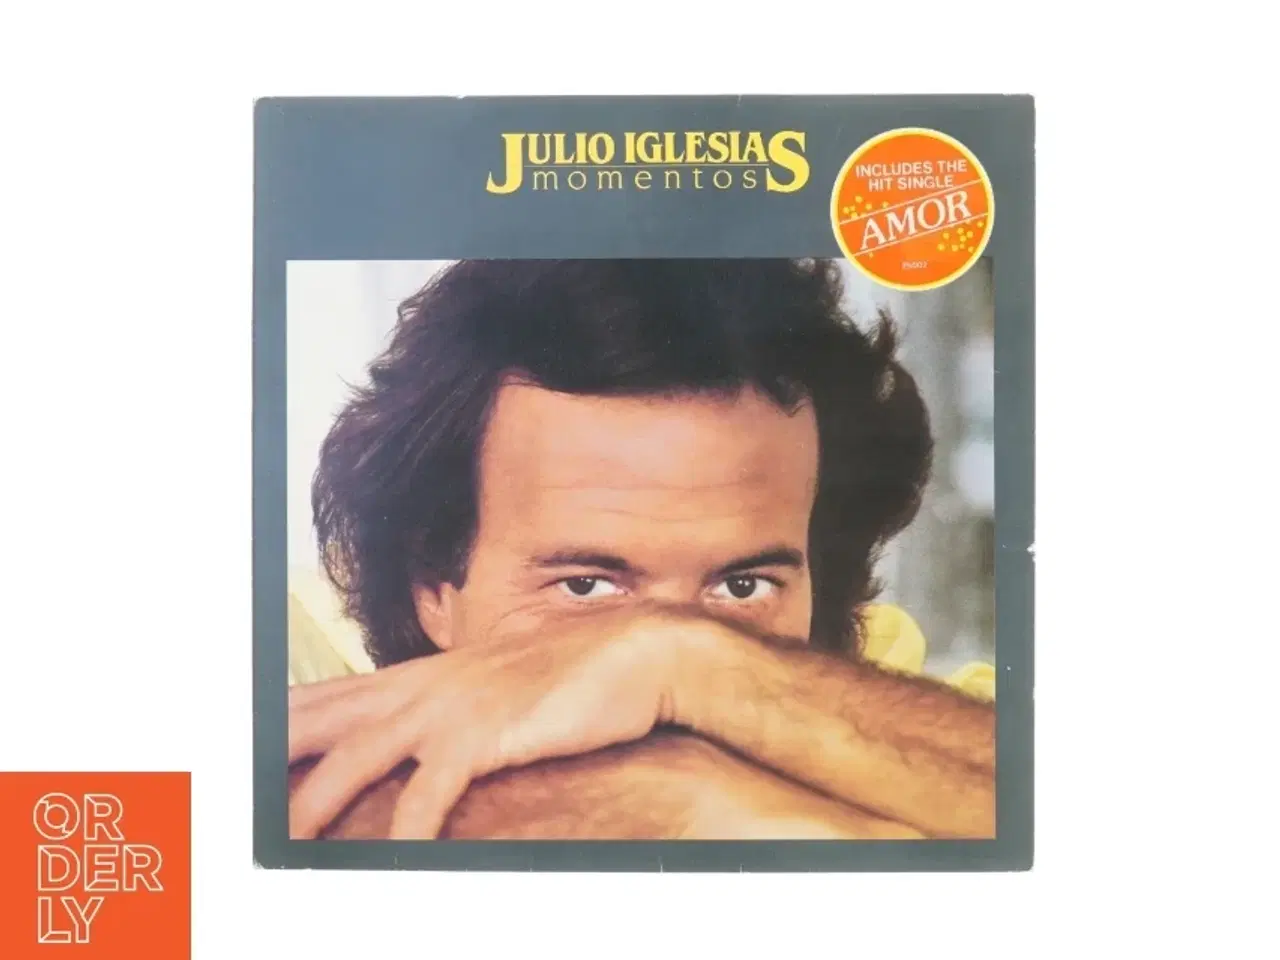 Billede 1 - LP Julio Iglesias; "Momentos" fra Cbs